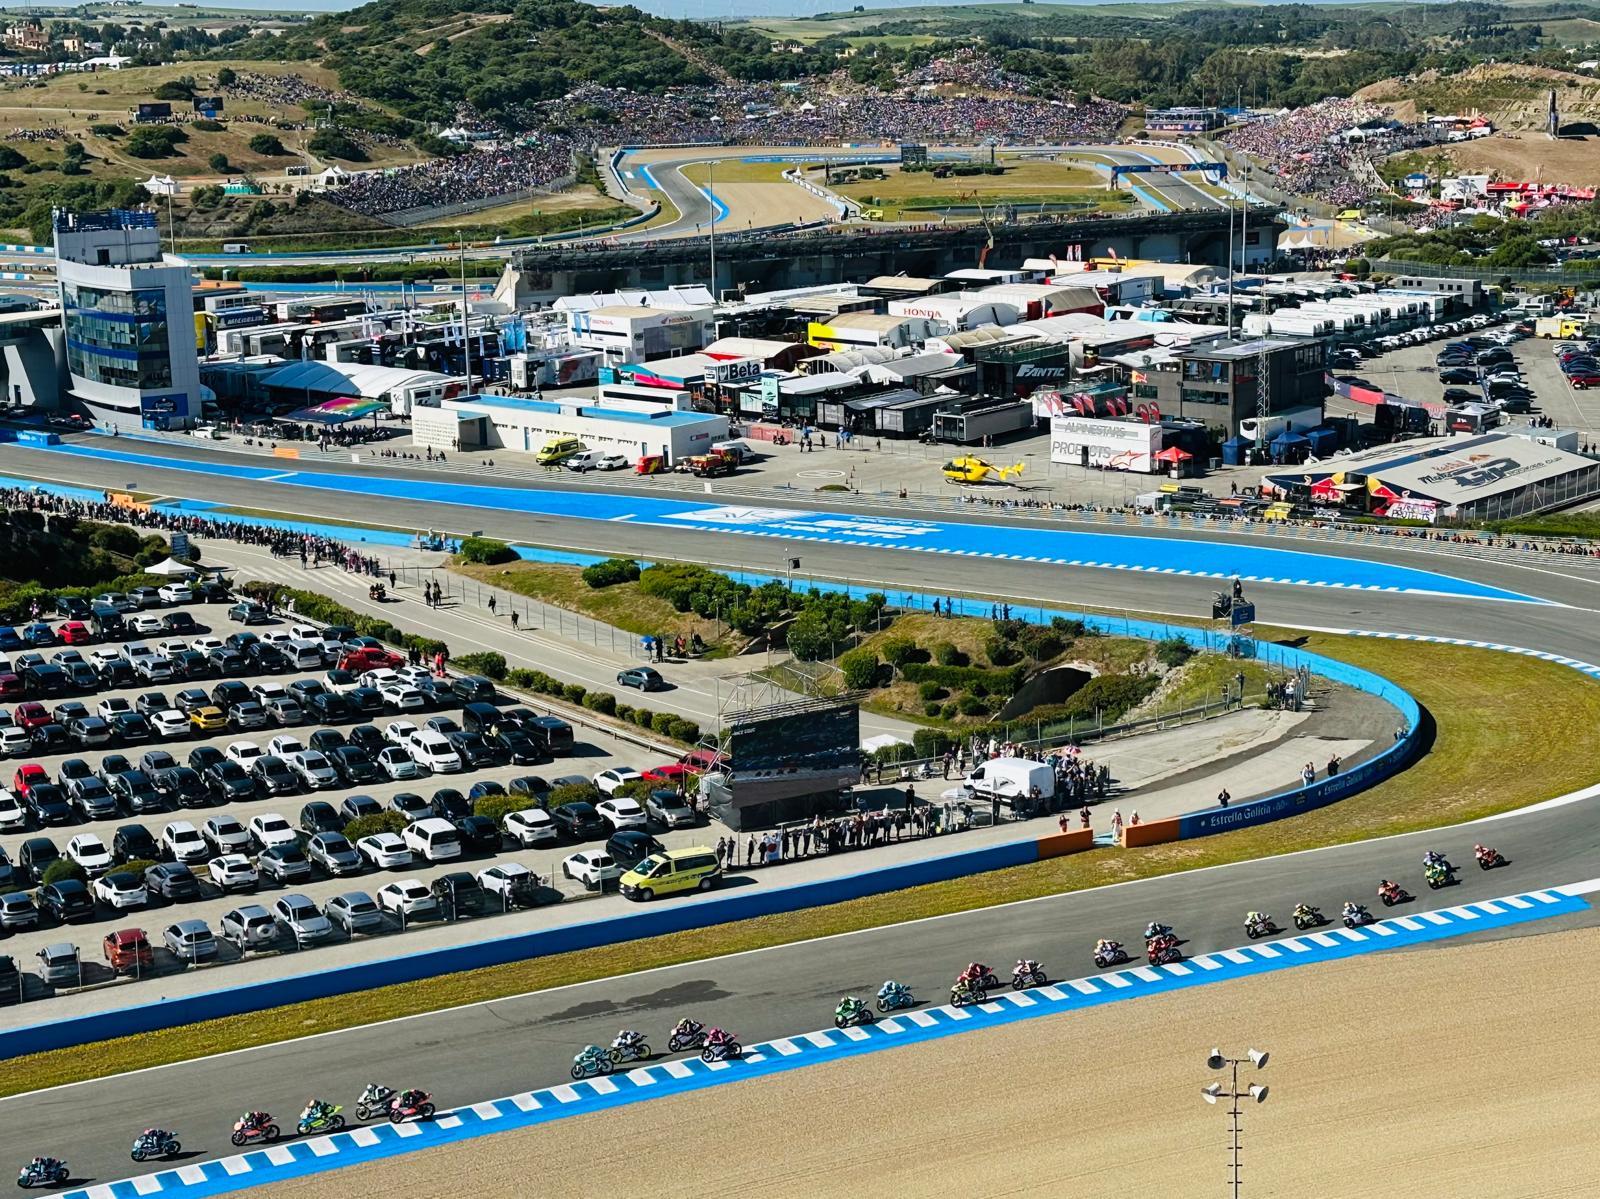 Nuevo récord histórico de asistencia de público al GP de España en Jerez de los últimos 25 años con casi 300.000 espectadores